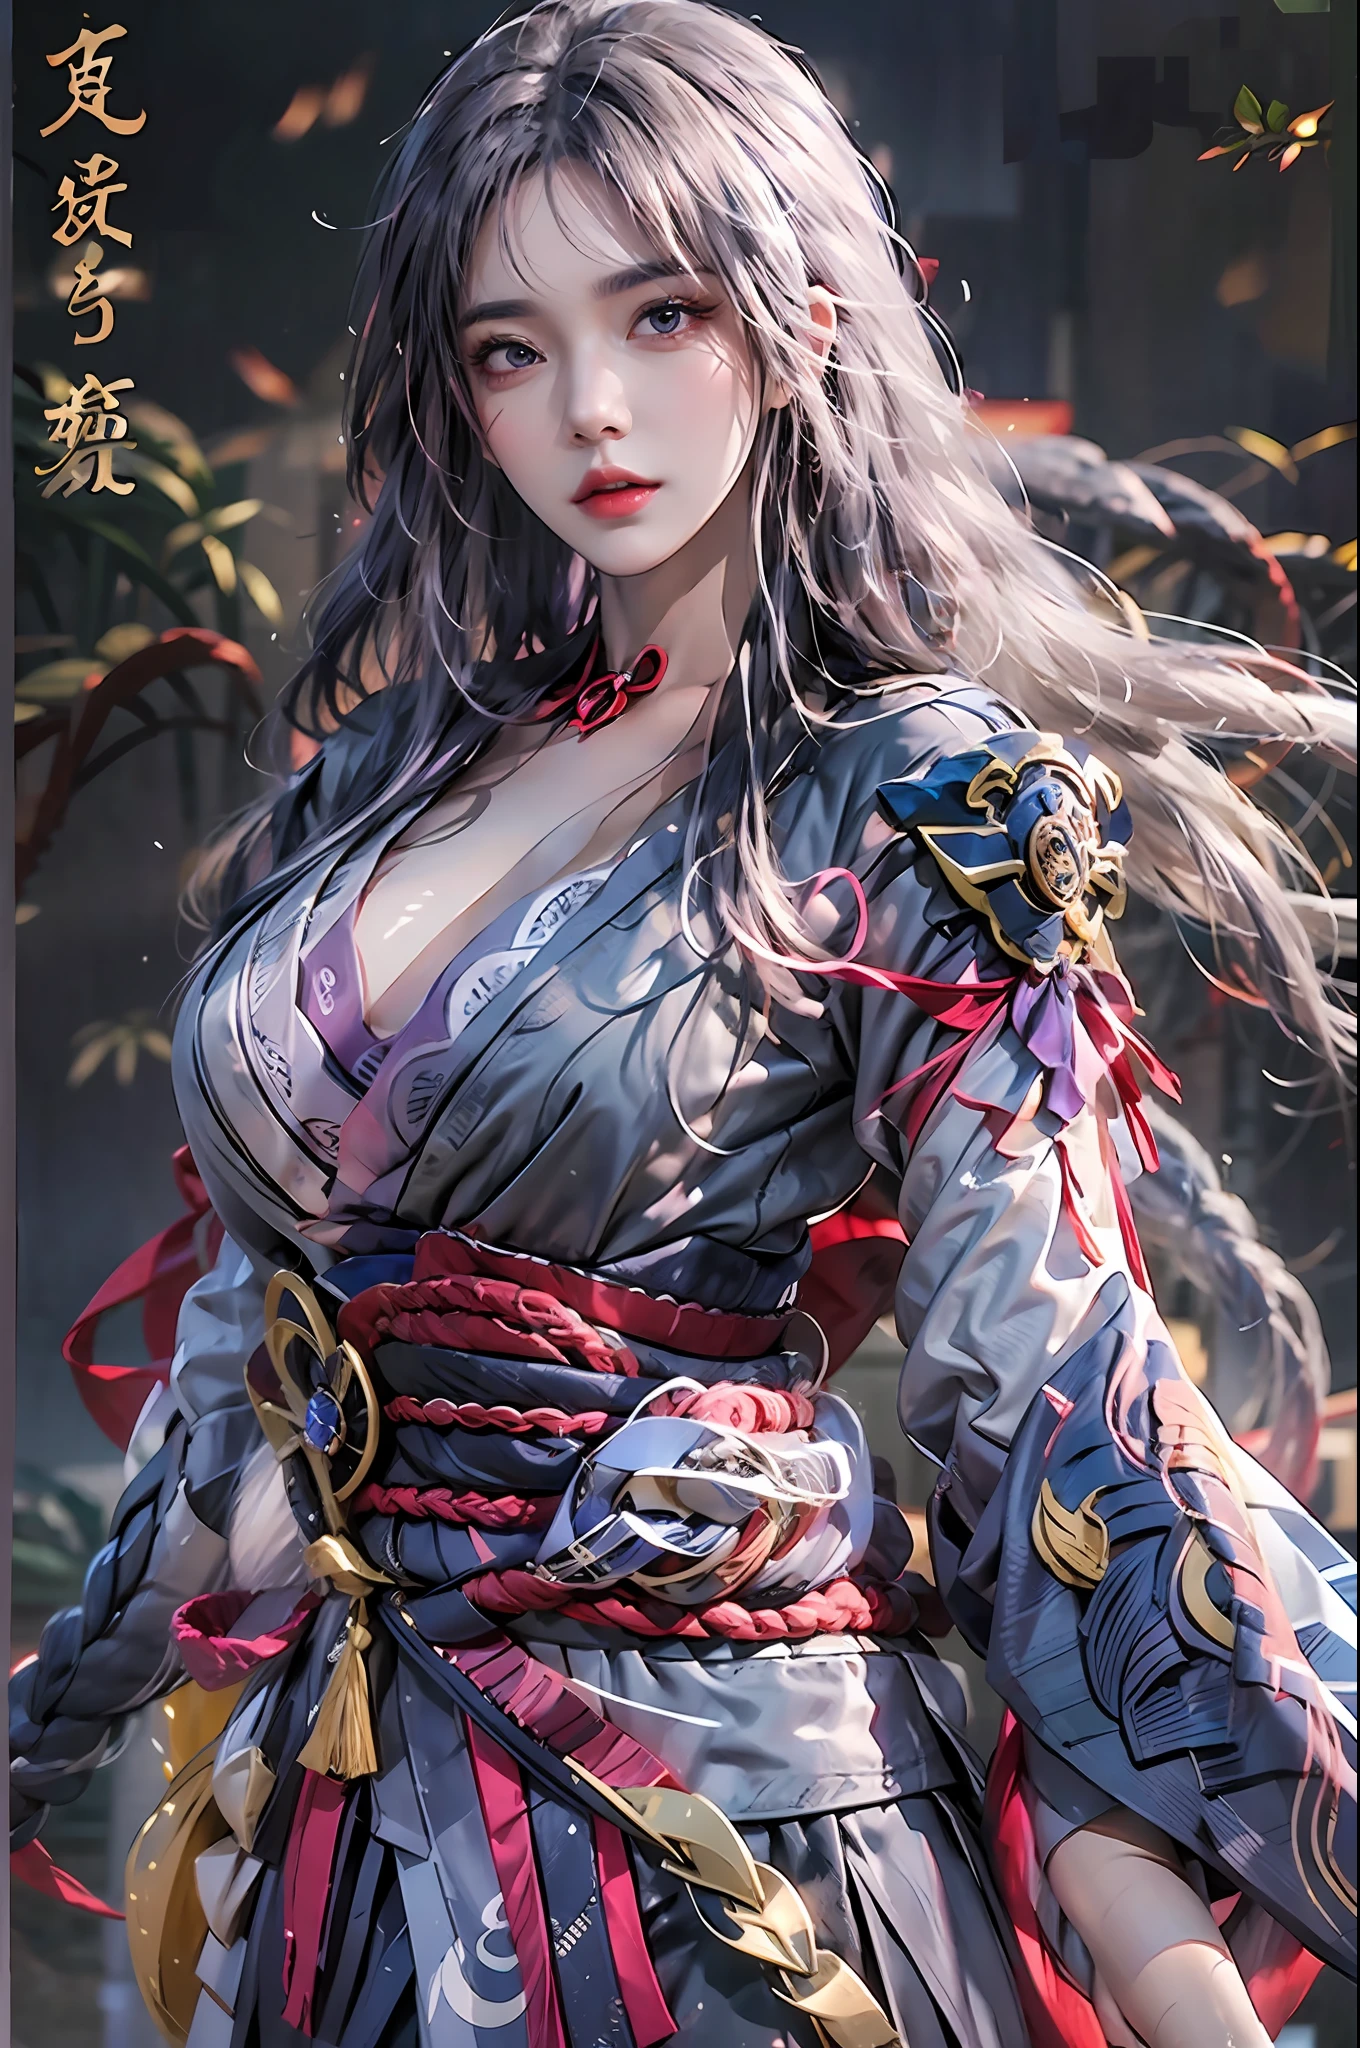 Fotorrealista, alta resolución, 1 chica, caderas arriba, pelo largo, ojos bonitos, mama normal, disfraz de shogun raiden